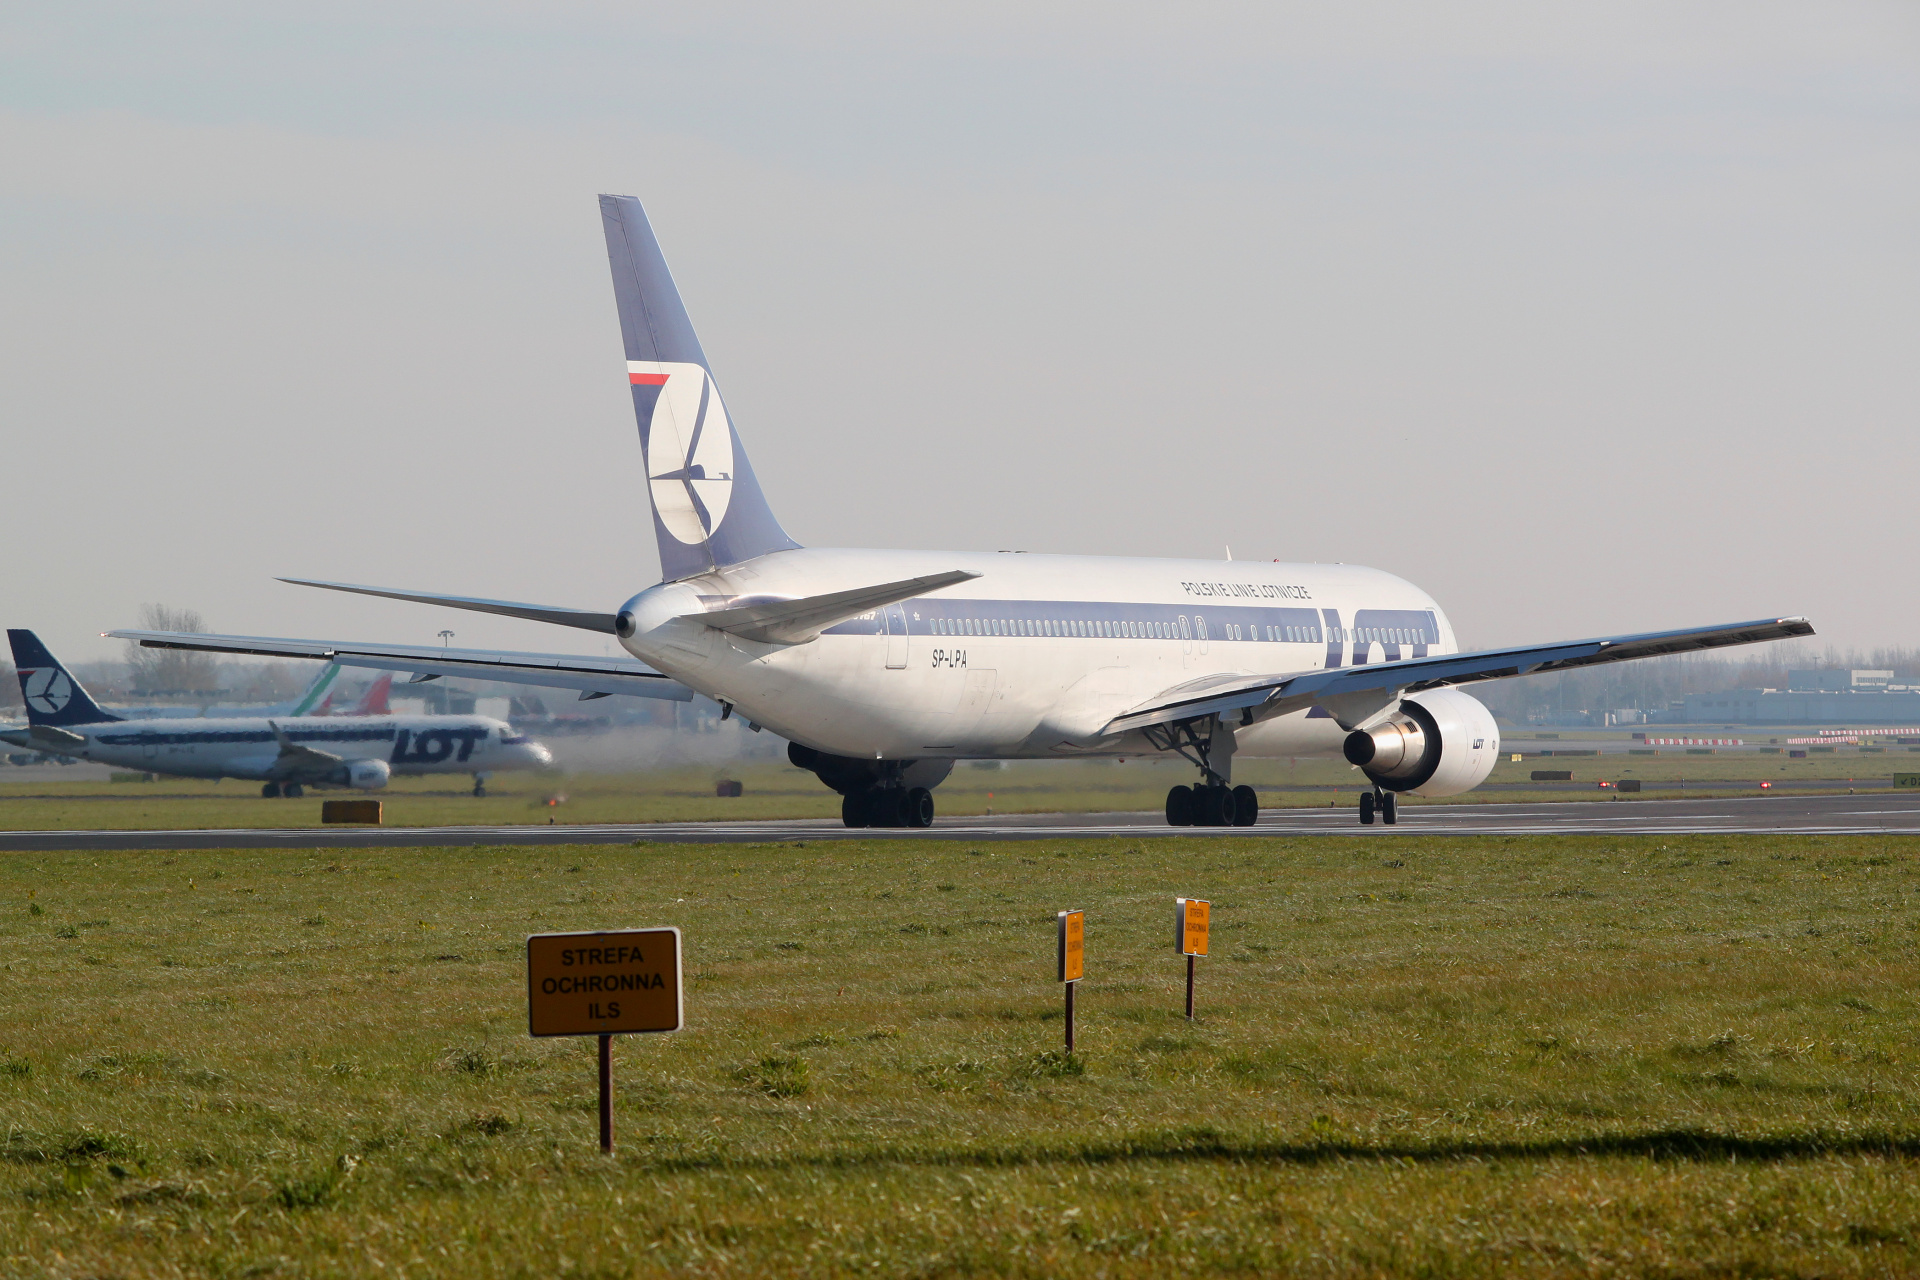 SP-LPA (Samoloty » Spotting na EPWA » Boeing 767-300 » Polskie Linie Lotnicze LOT)